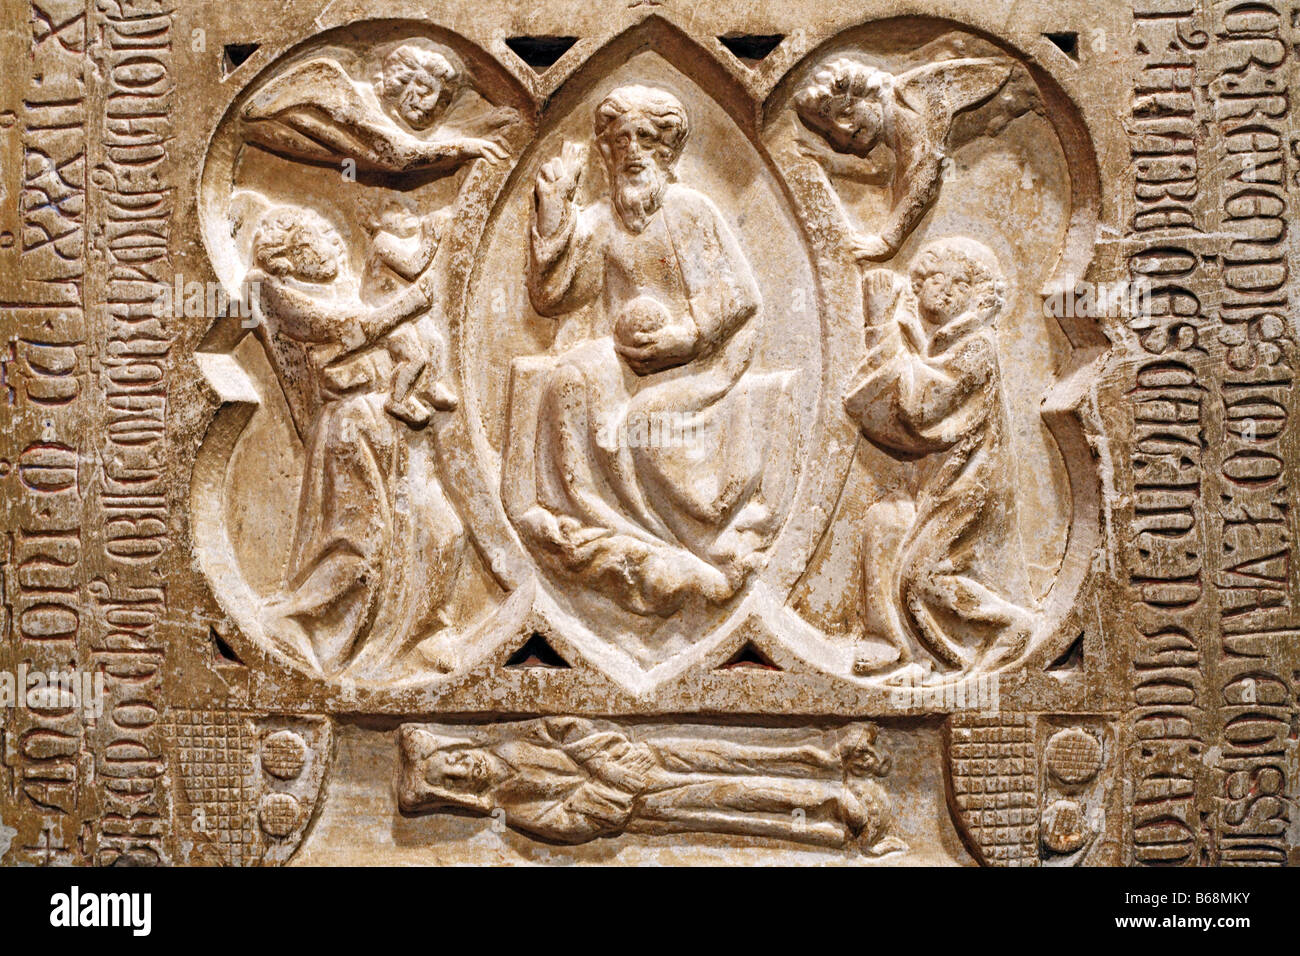 La sculpture romane en pierre, l'art, musée des Augustins, Toulouse, France musée Banque D'Images